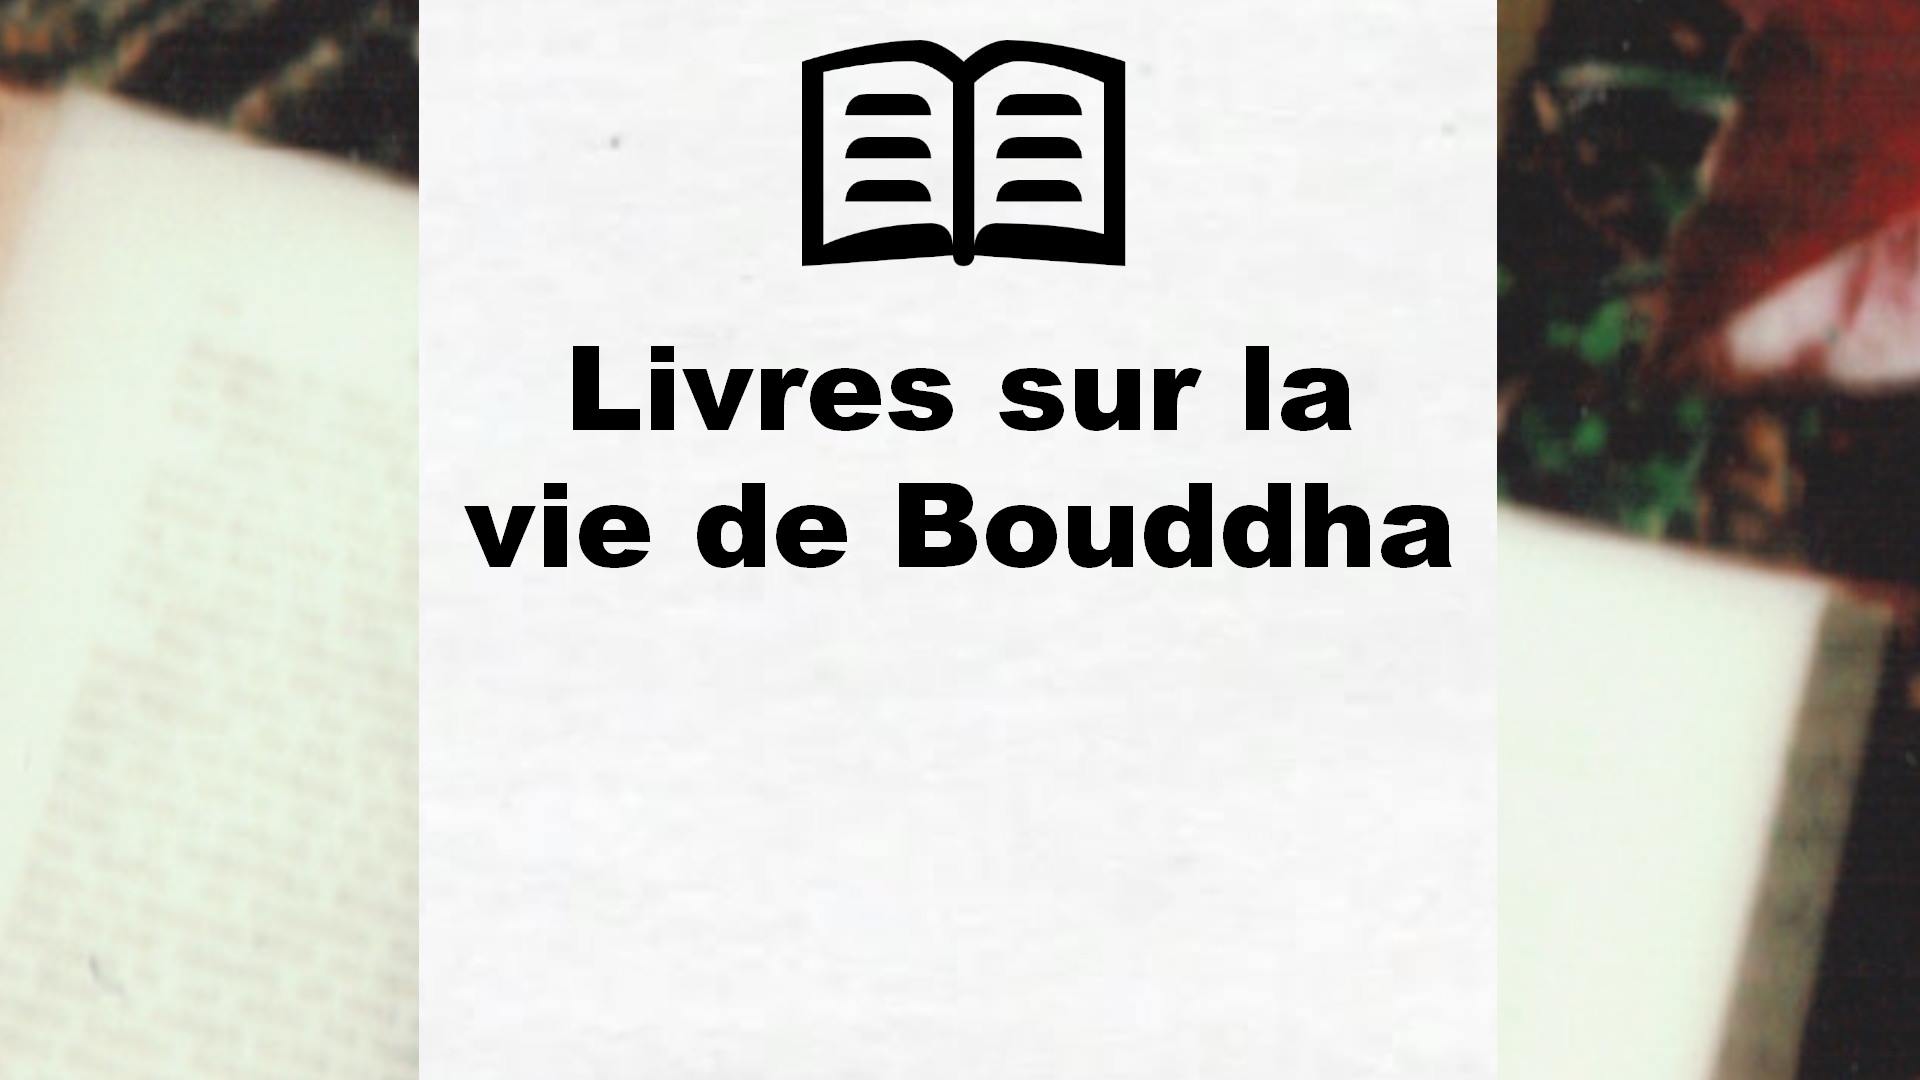 Livres sur la vie de Bouddha